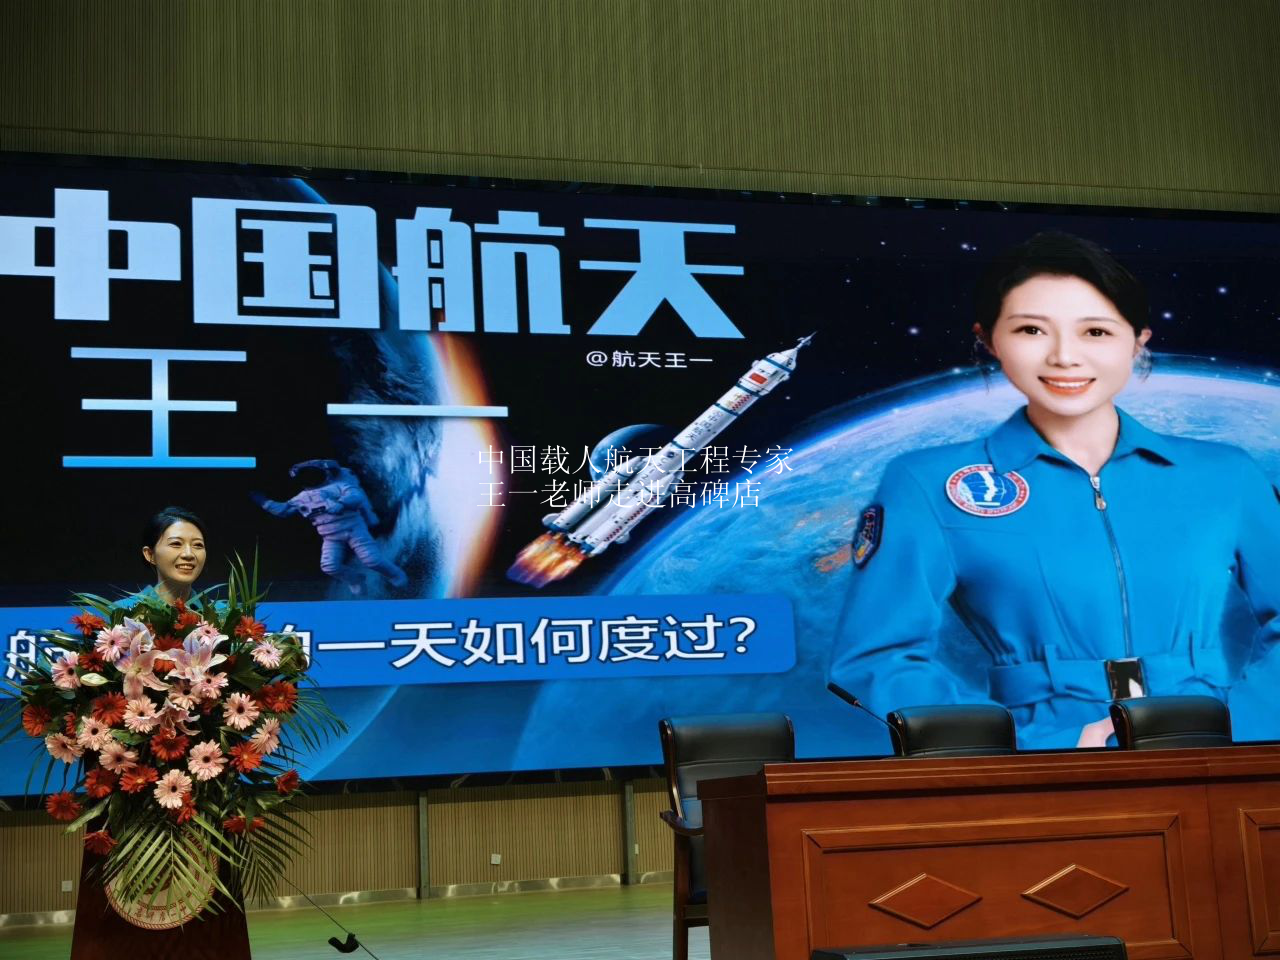 中国载人航天工程专家王一老师走进高碑店